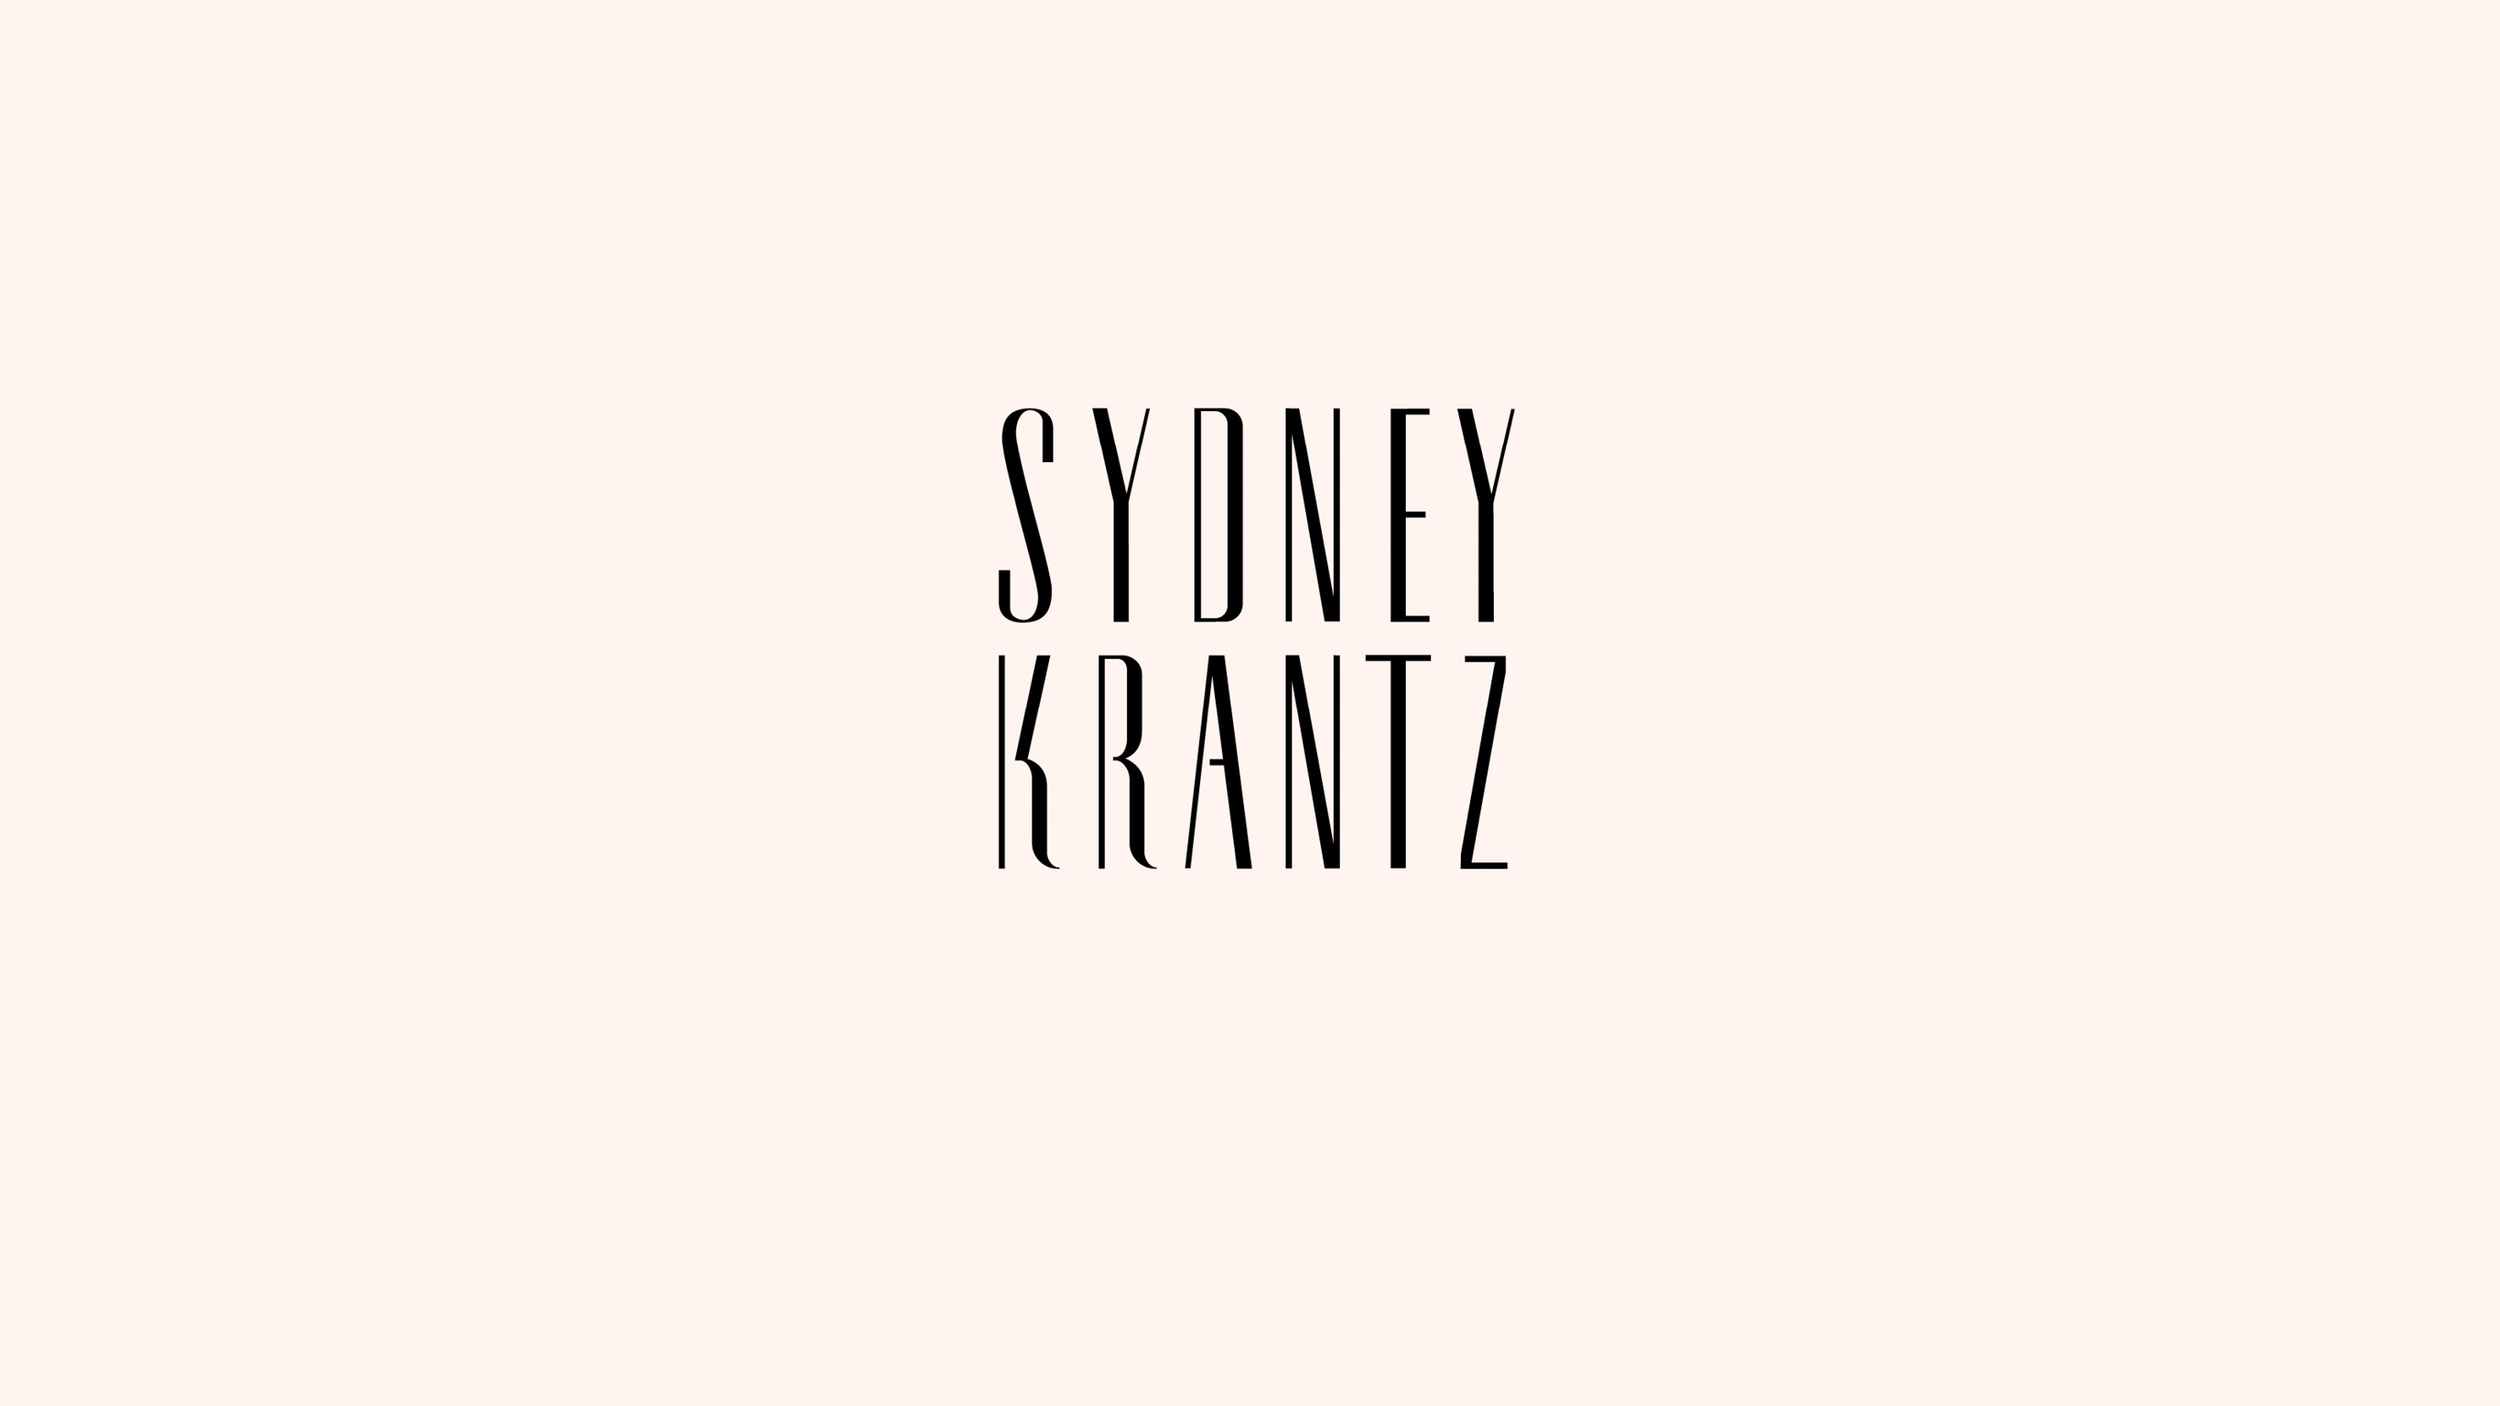 Sydney_krantz5.png